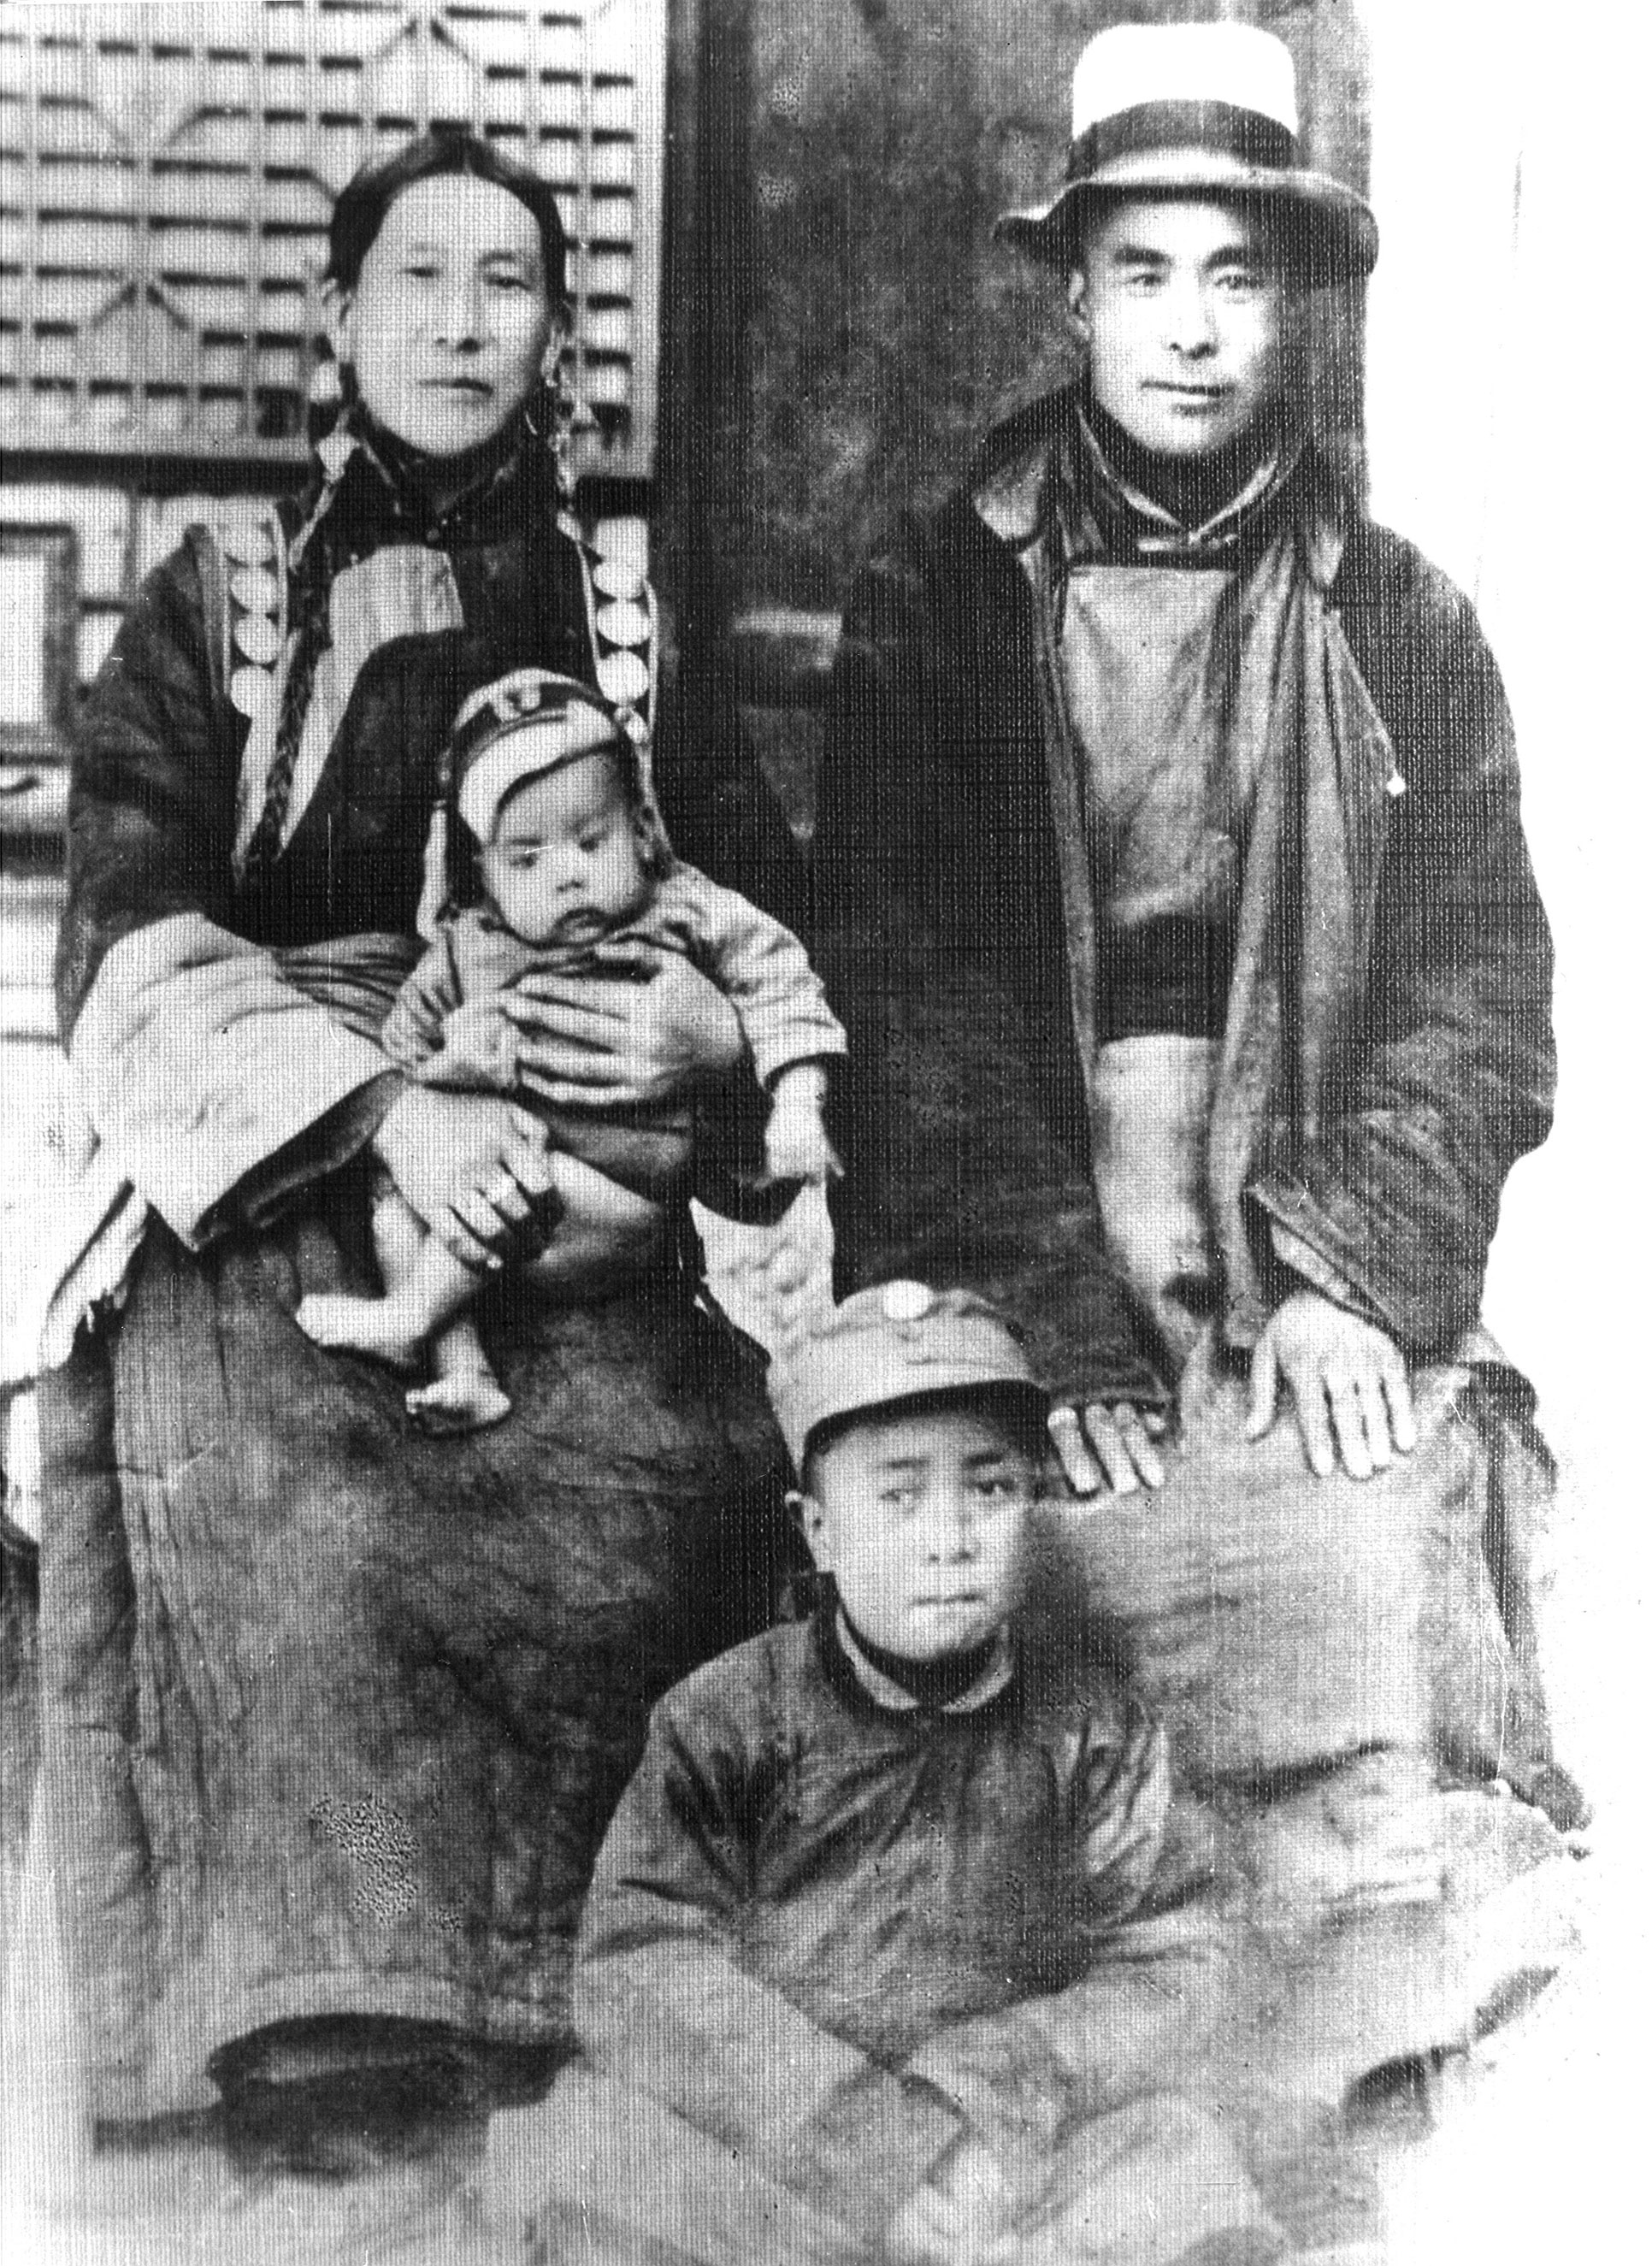 Dalai Lama early life photos